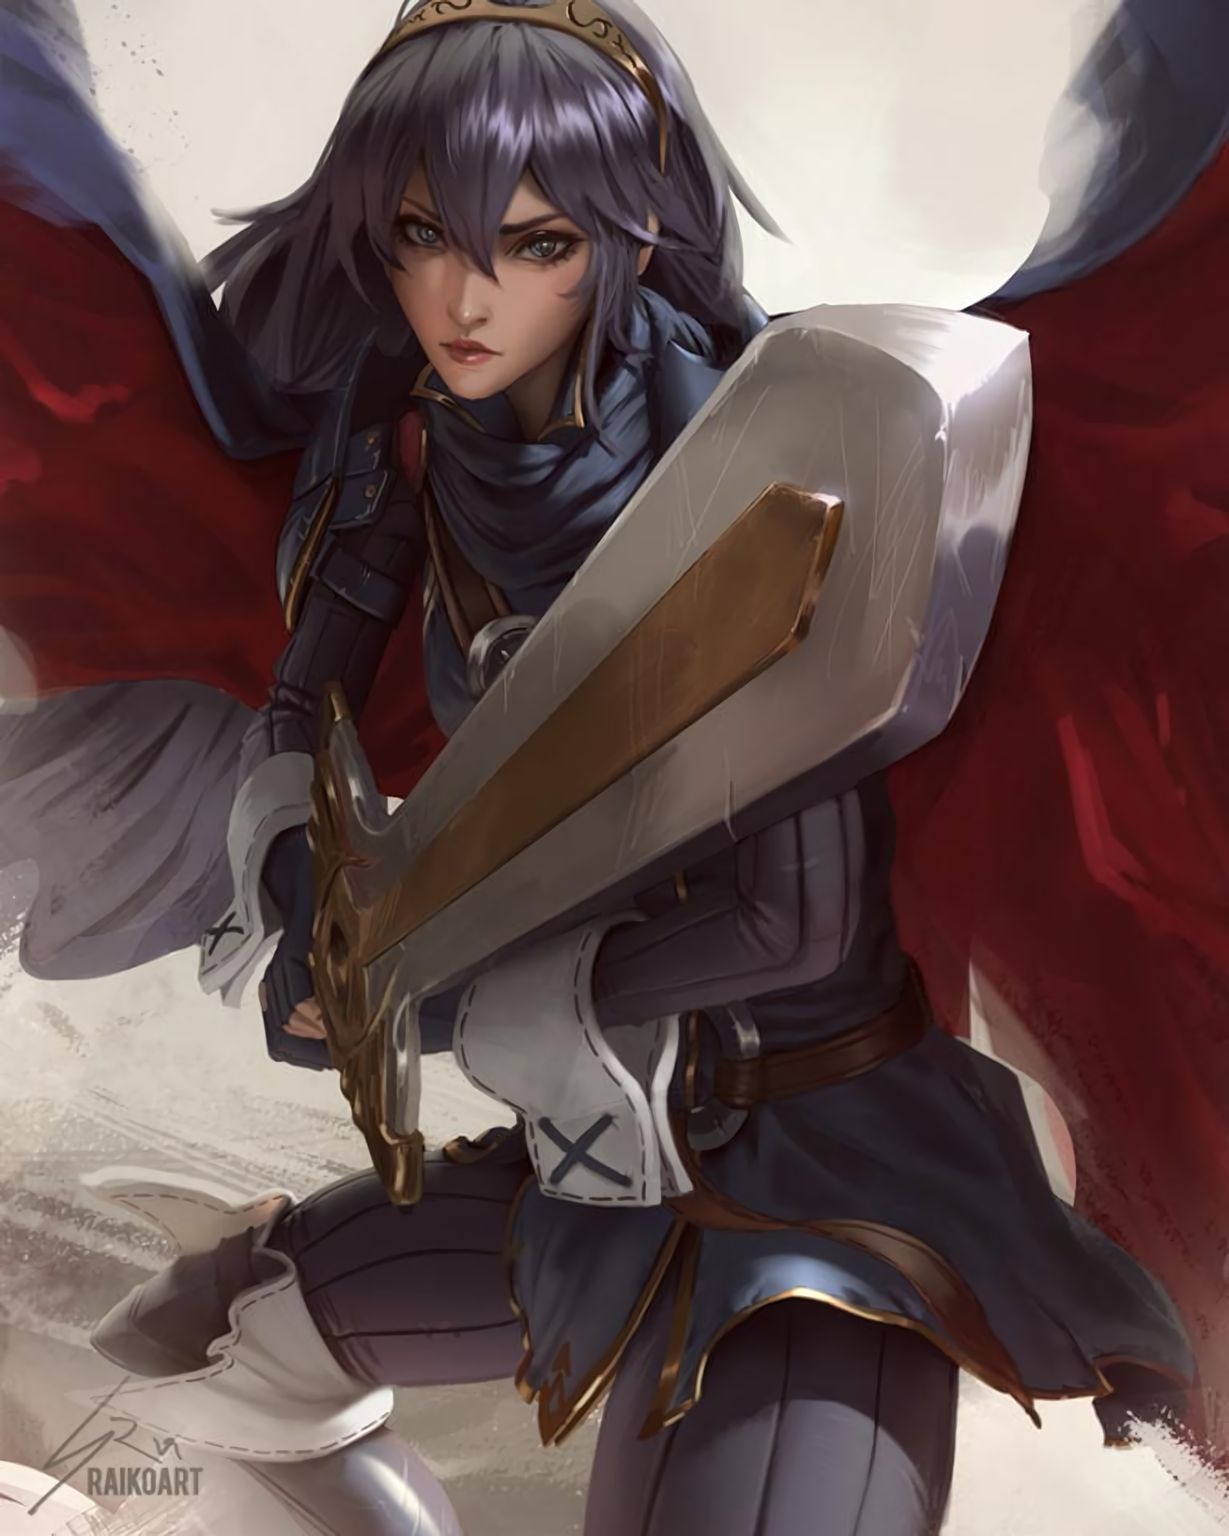 Beautiful girl Lucina with sword: Fire Emblem art: Other games (Artist: Rai...